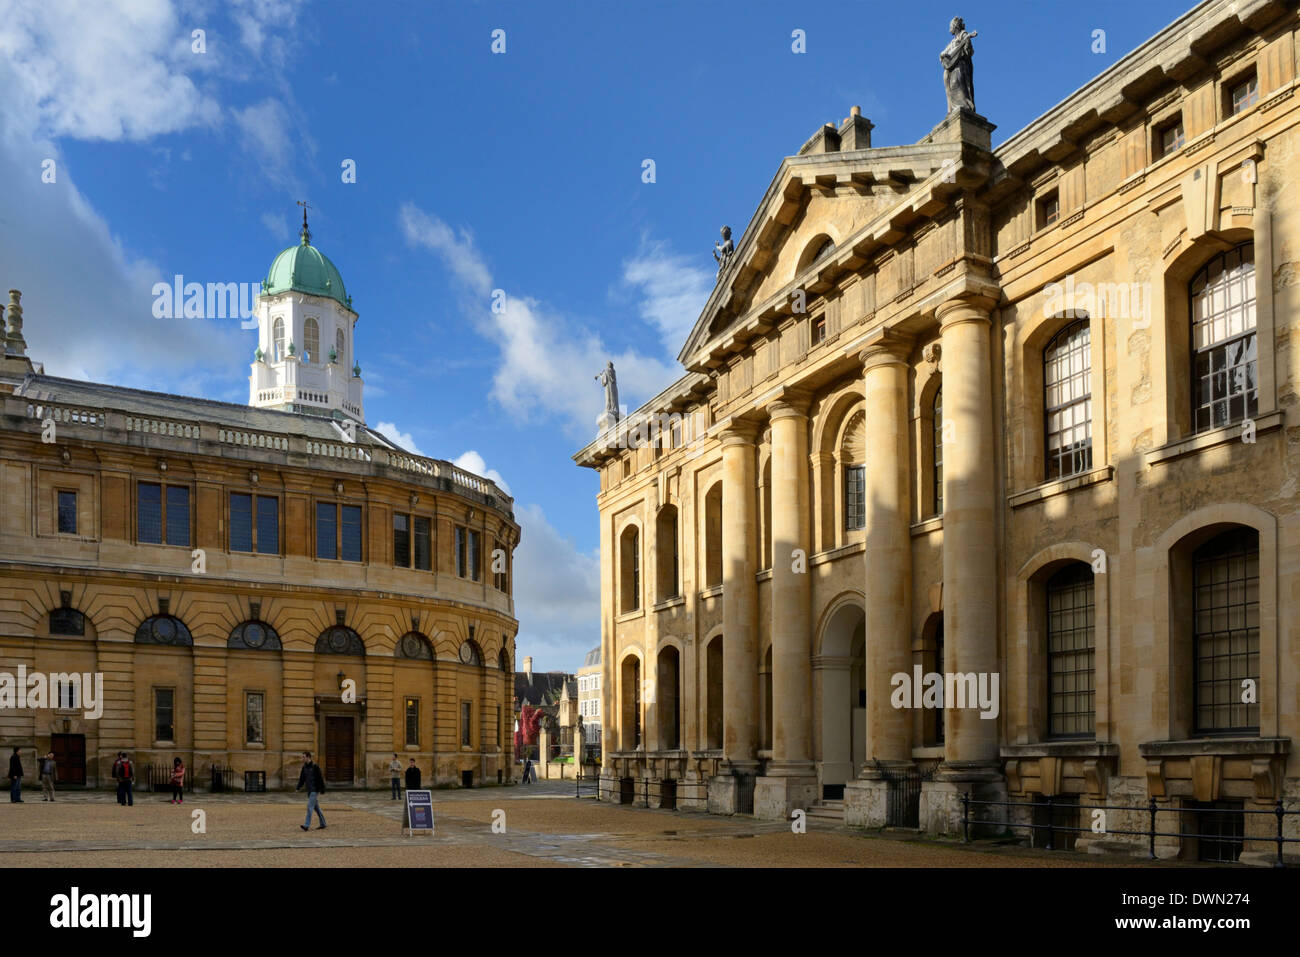 Le Clarendon Building et Sheldonian Theatre, Oxford, Oxfordshire, Angleterre, Royaume-Uni, Europe Banque D'Images